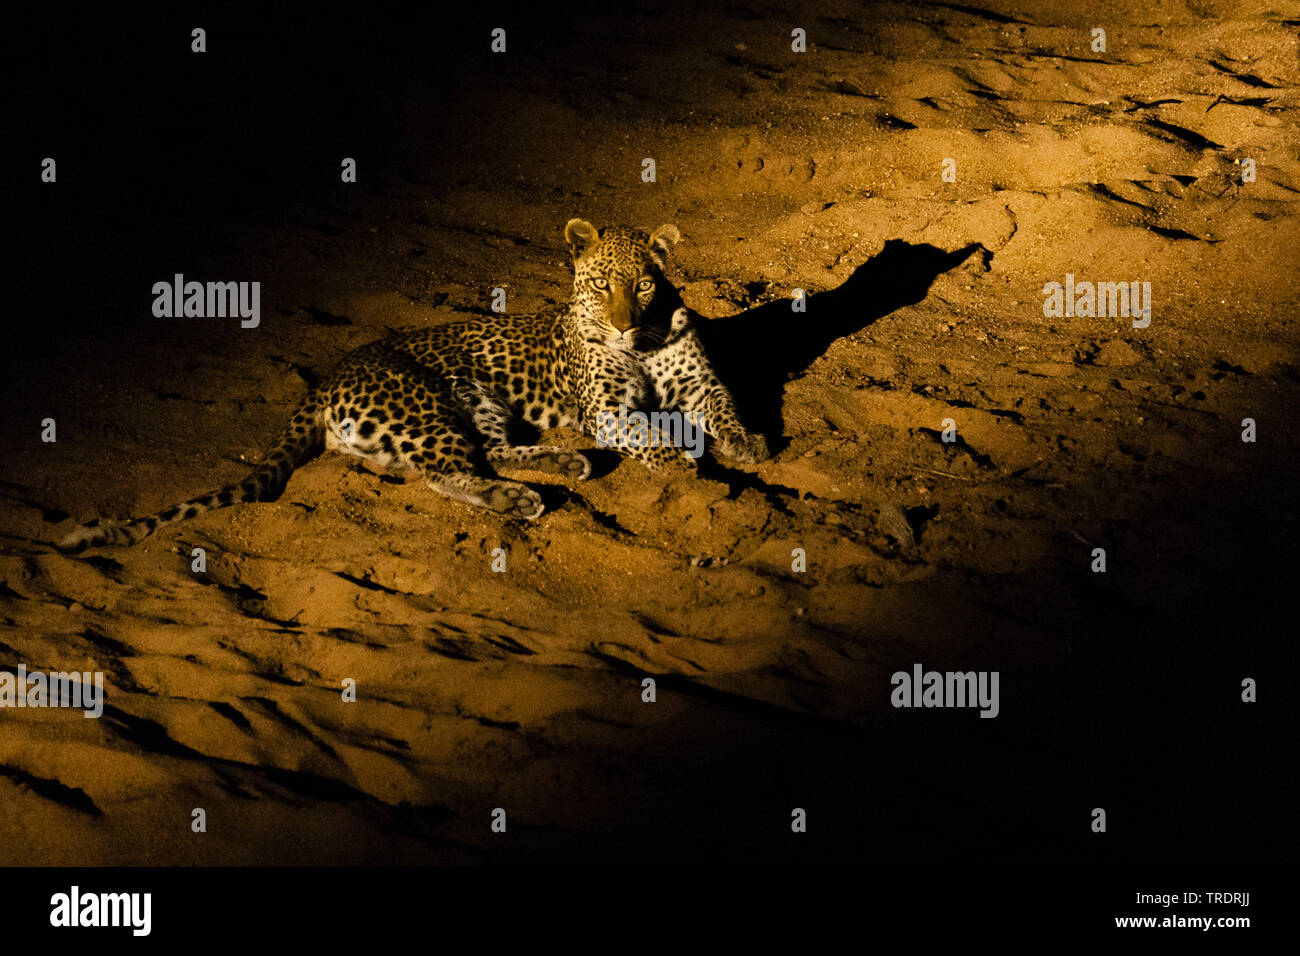 Leopard (Panthera pardus), le repos de nuit dans le faisceau d'une lampe de poche, d'Afrique du Sud, Mpumalanga, Kruger National Park Banque D'Images